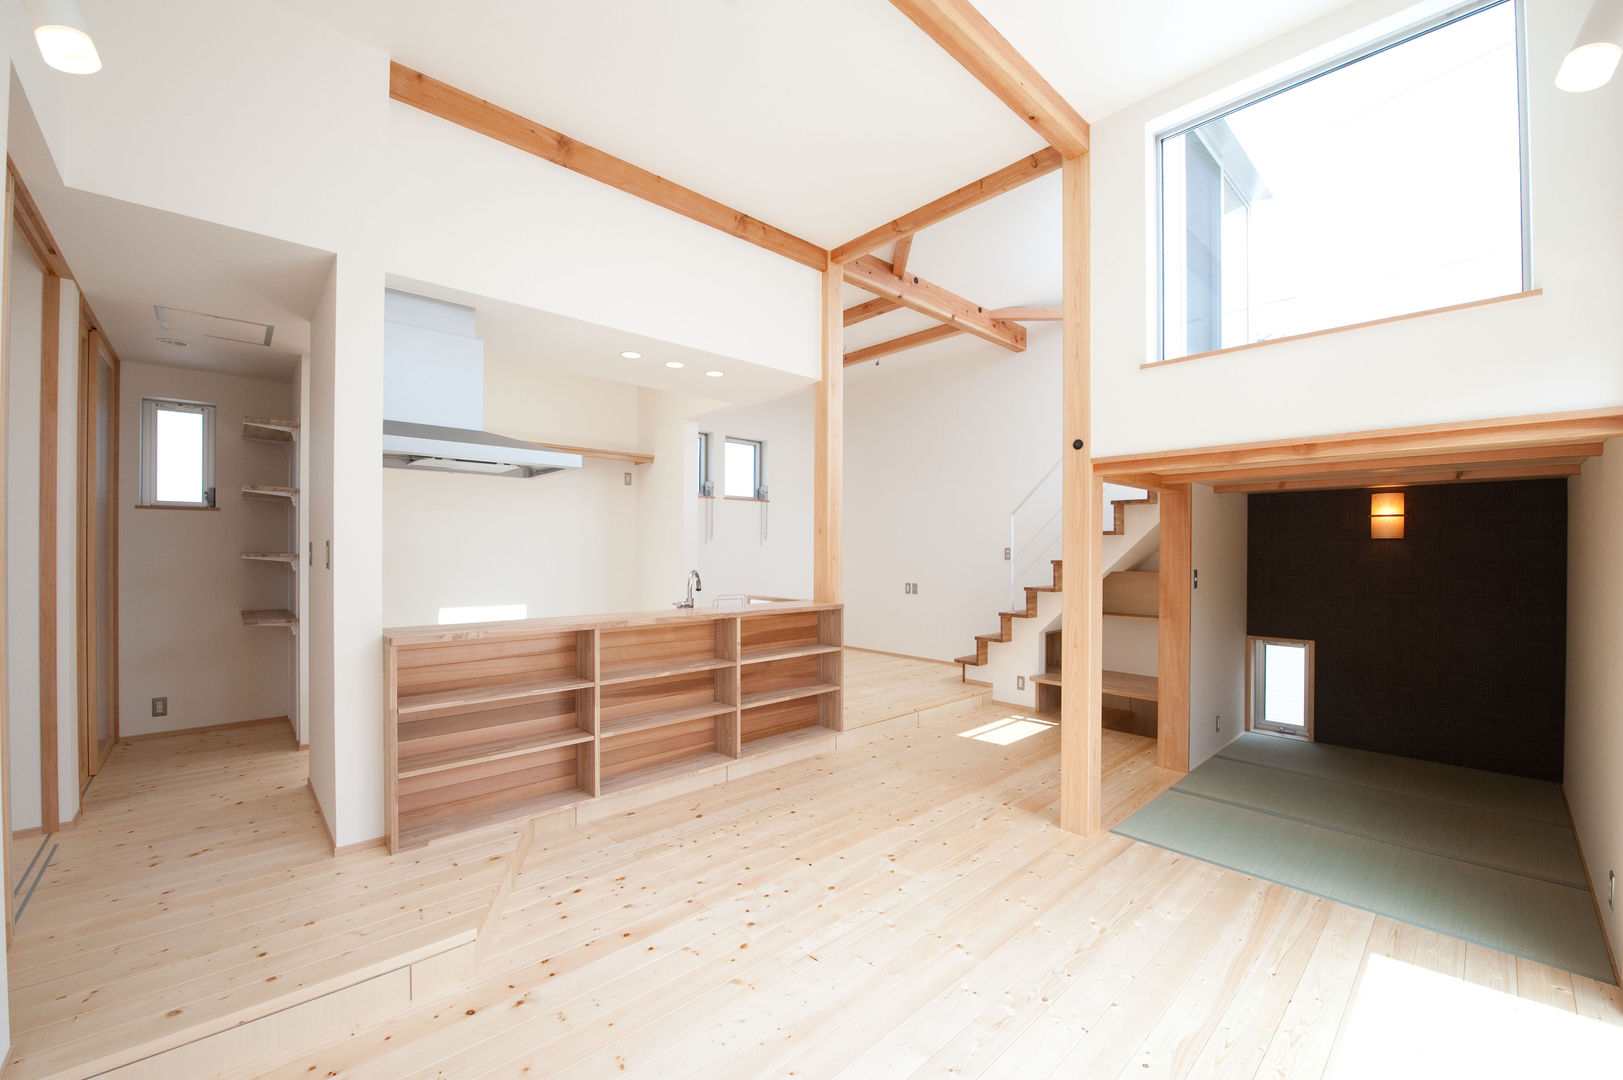 『光あふれる家族スペースの住まい』, m+h建築設計スタジオ m+h建築設計スタジオ Living room